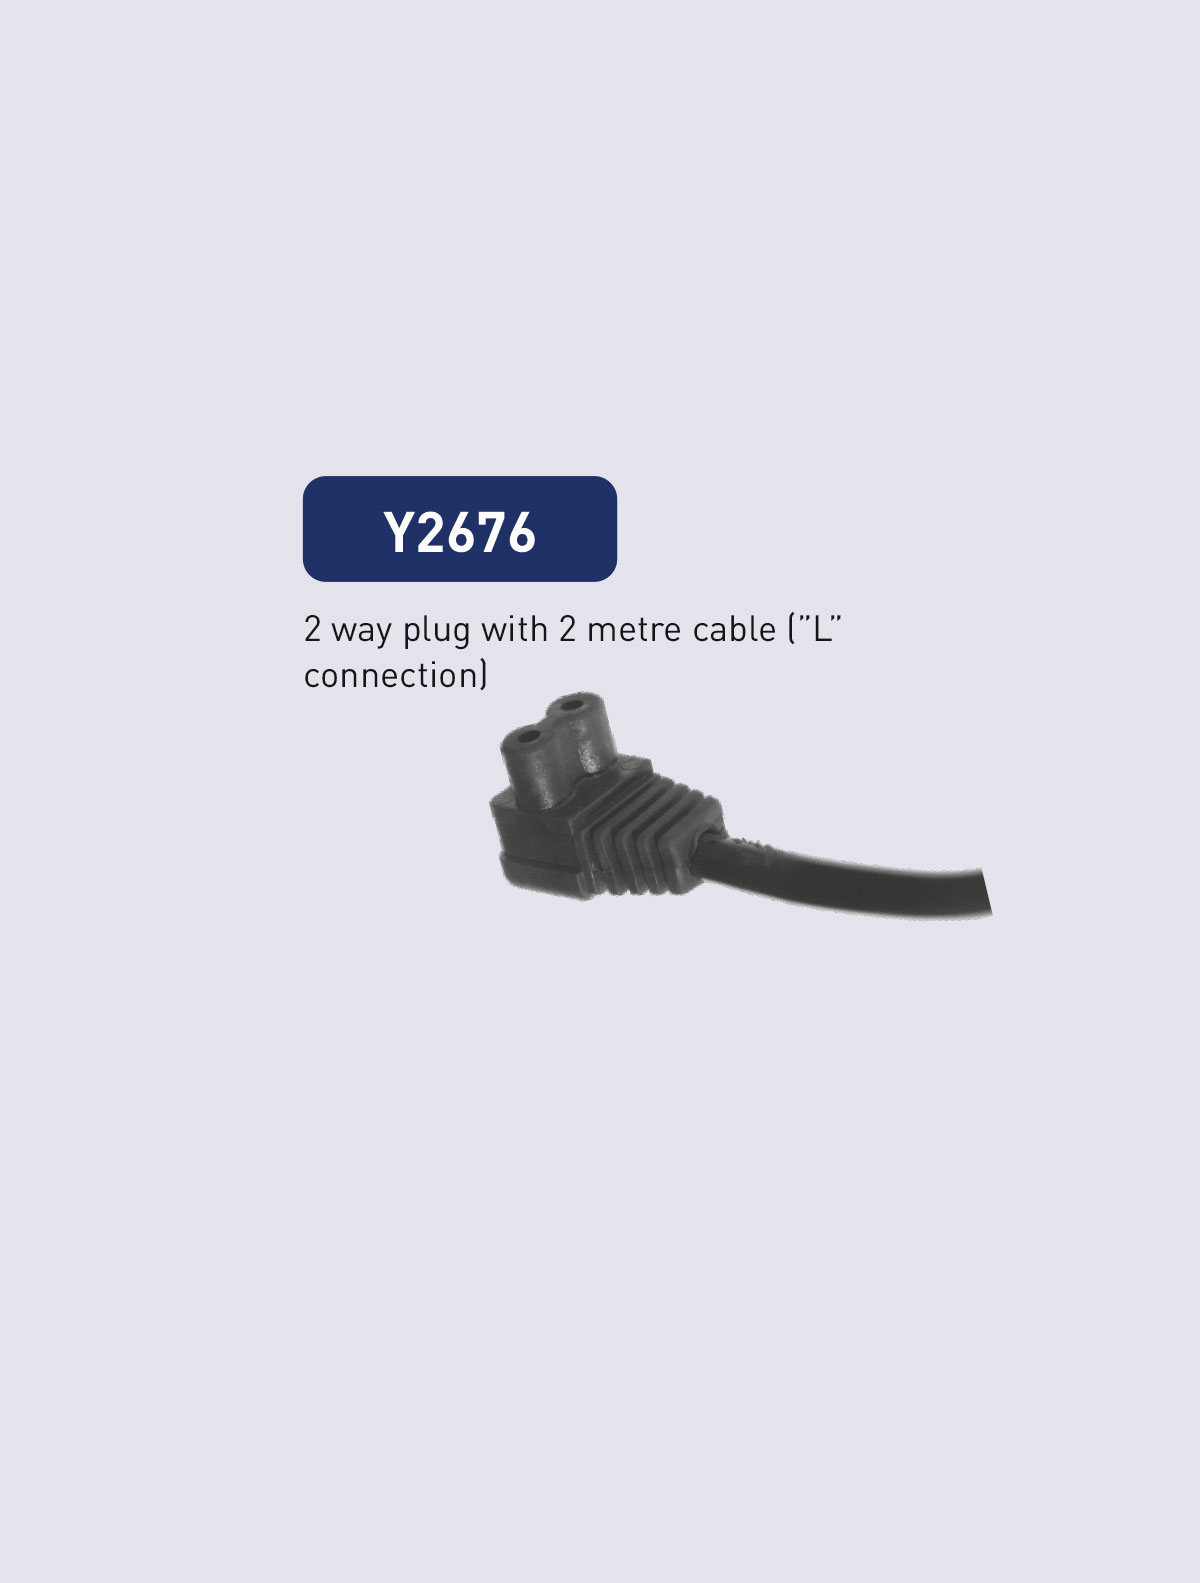 Y2676 cable